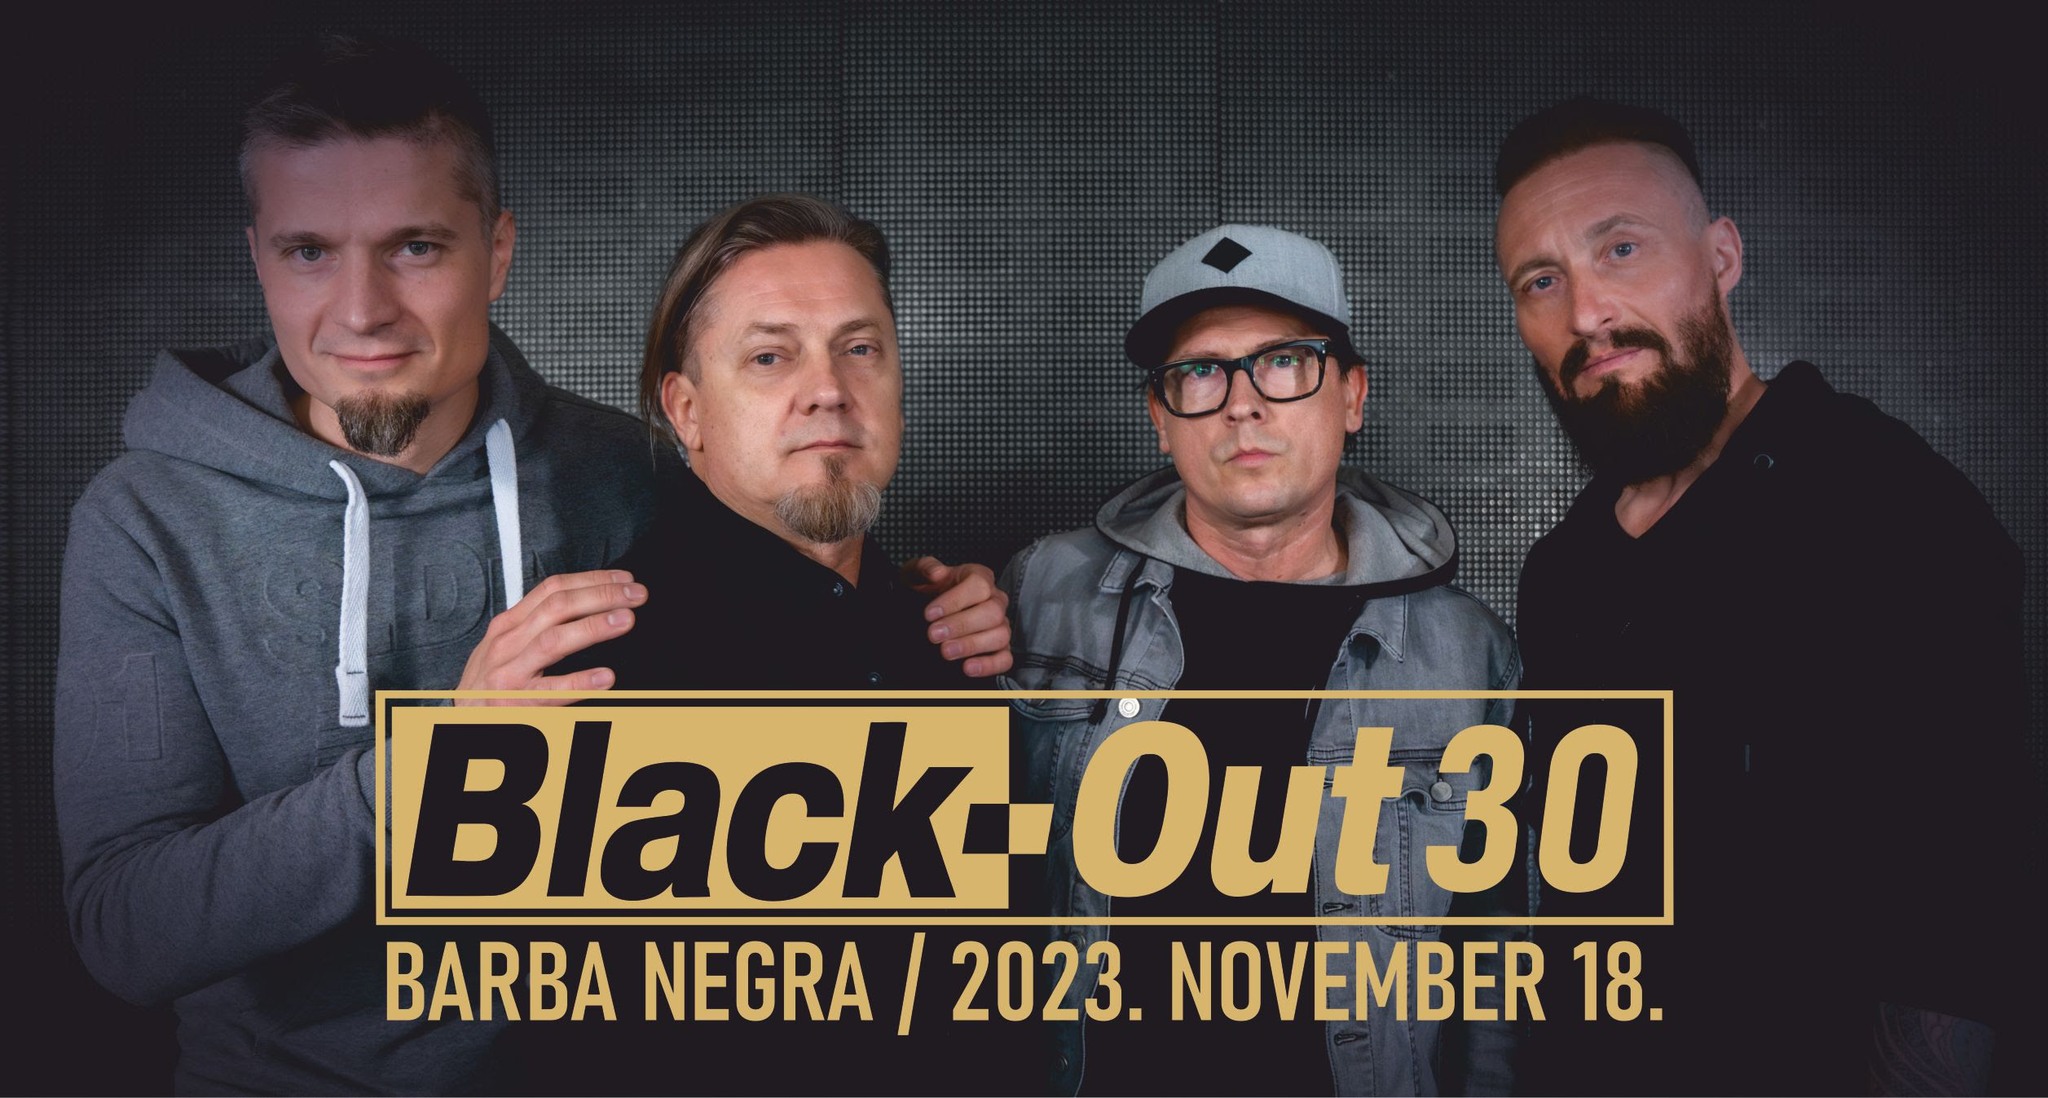 Black-Out  - 30 éves szülinapi koncert november közepén a Barba Negrában!